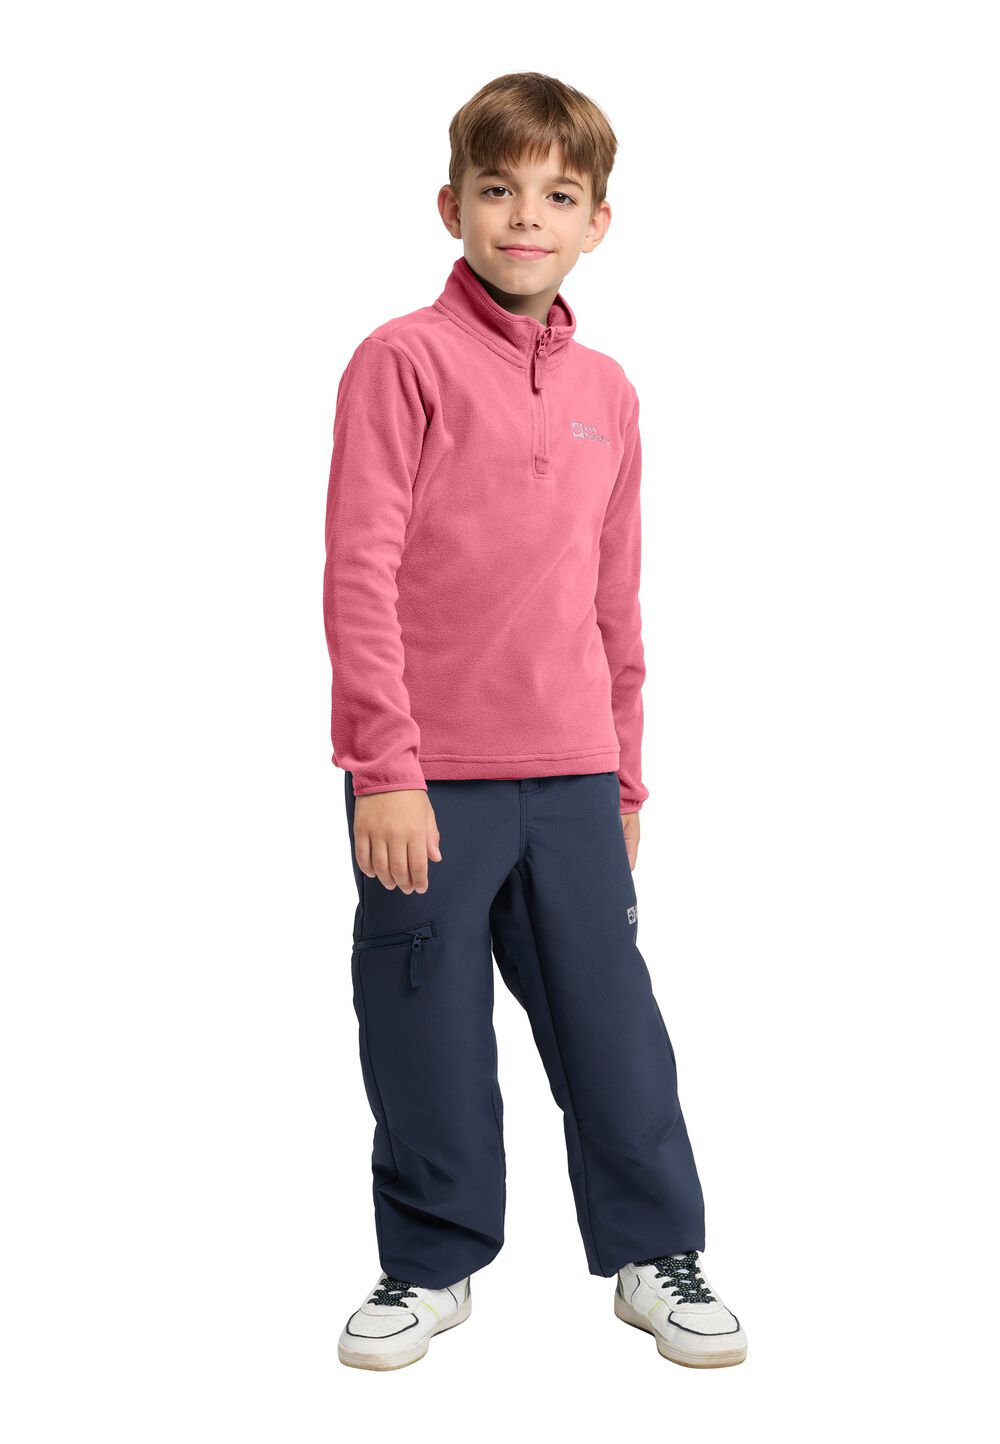 Jack Wolfskin Taunus Halfzip Kids Fleece trui Kinderen 164 soft pink soft pink